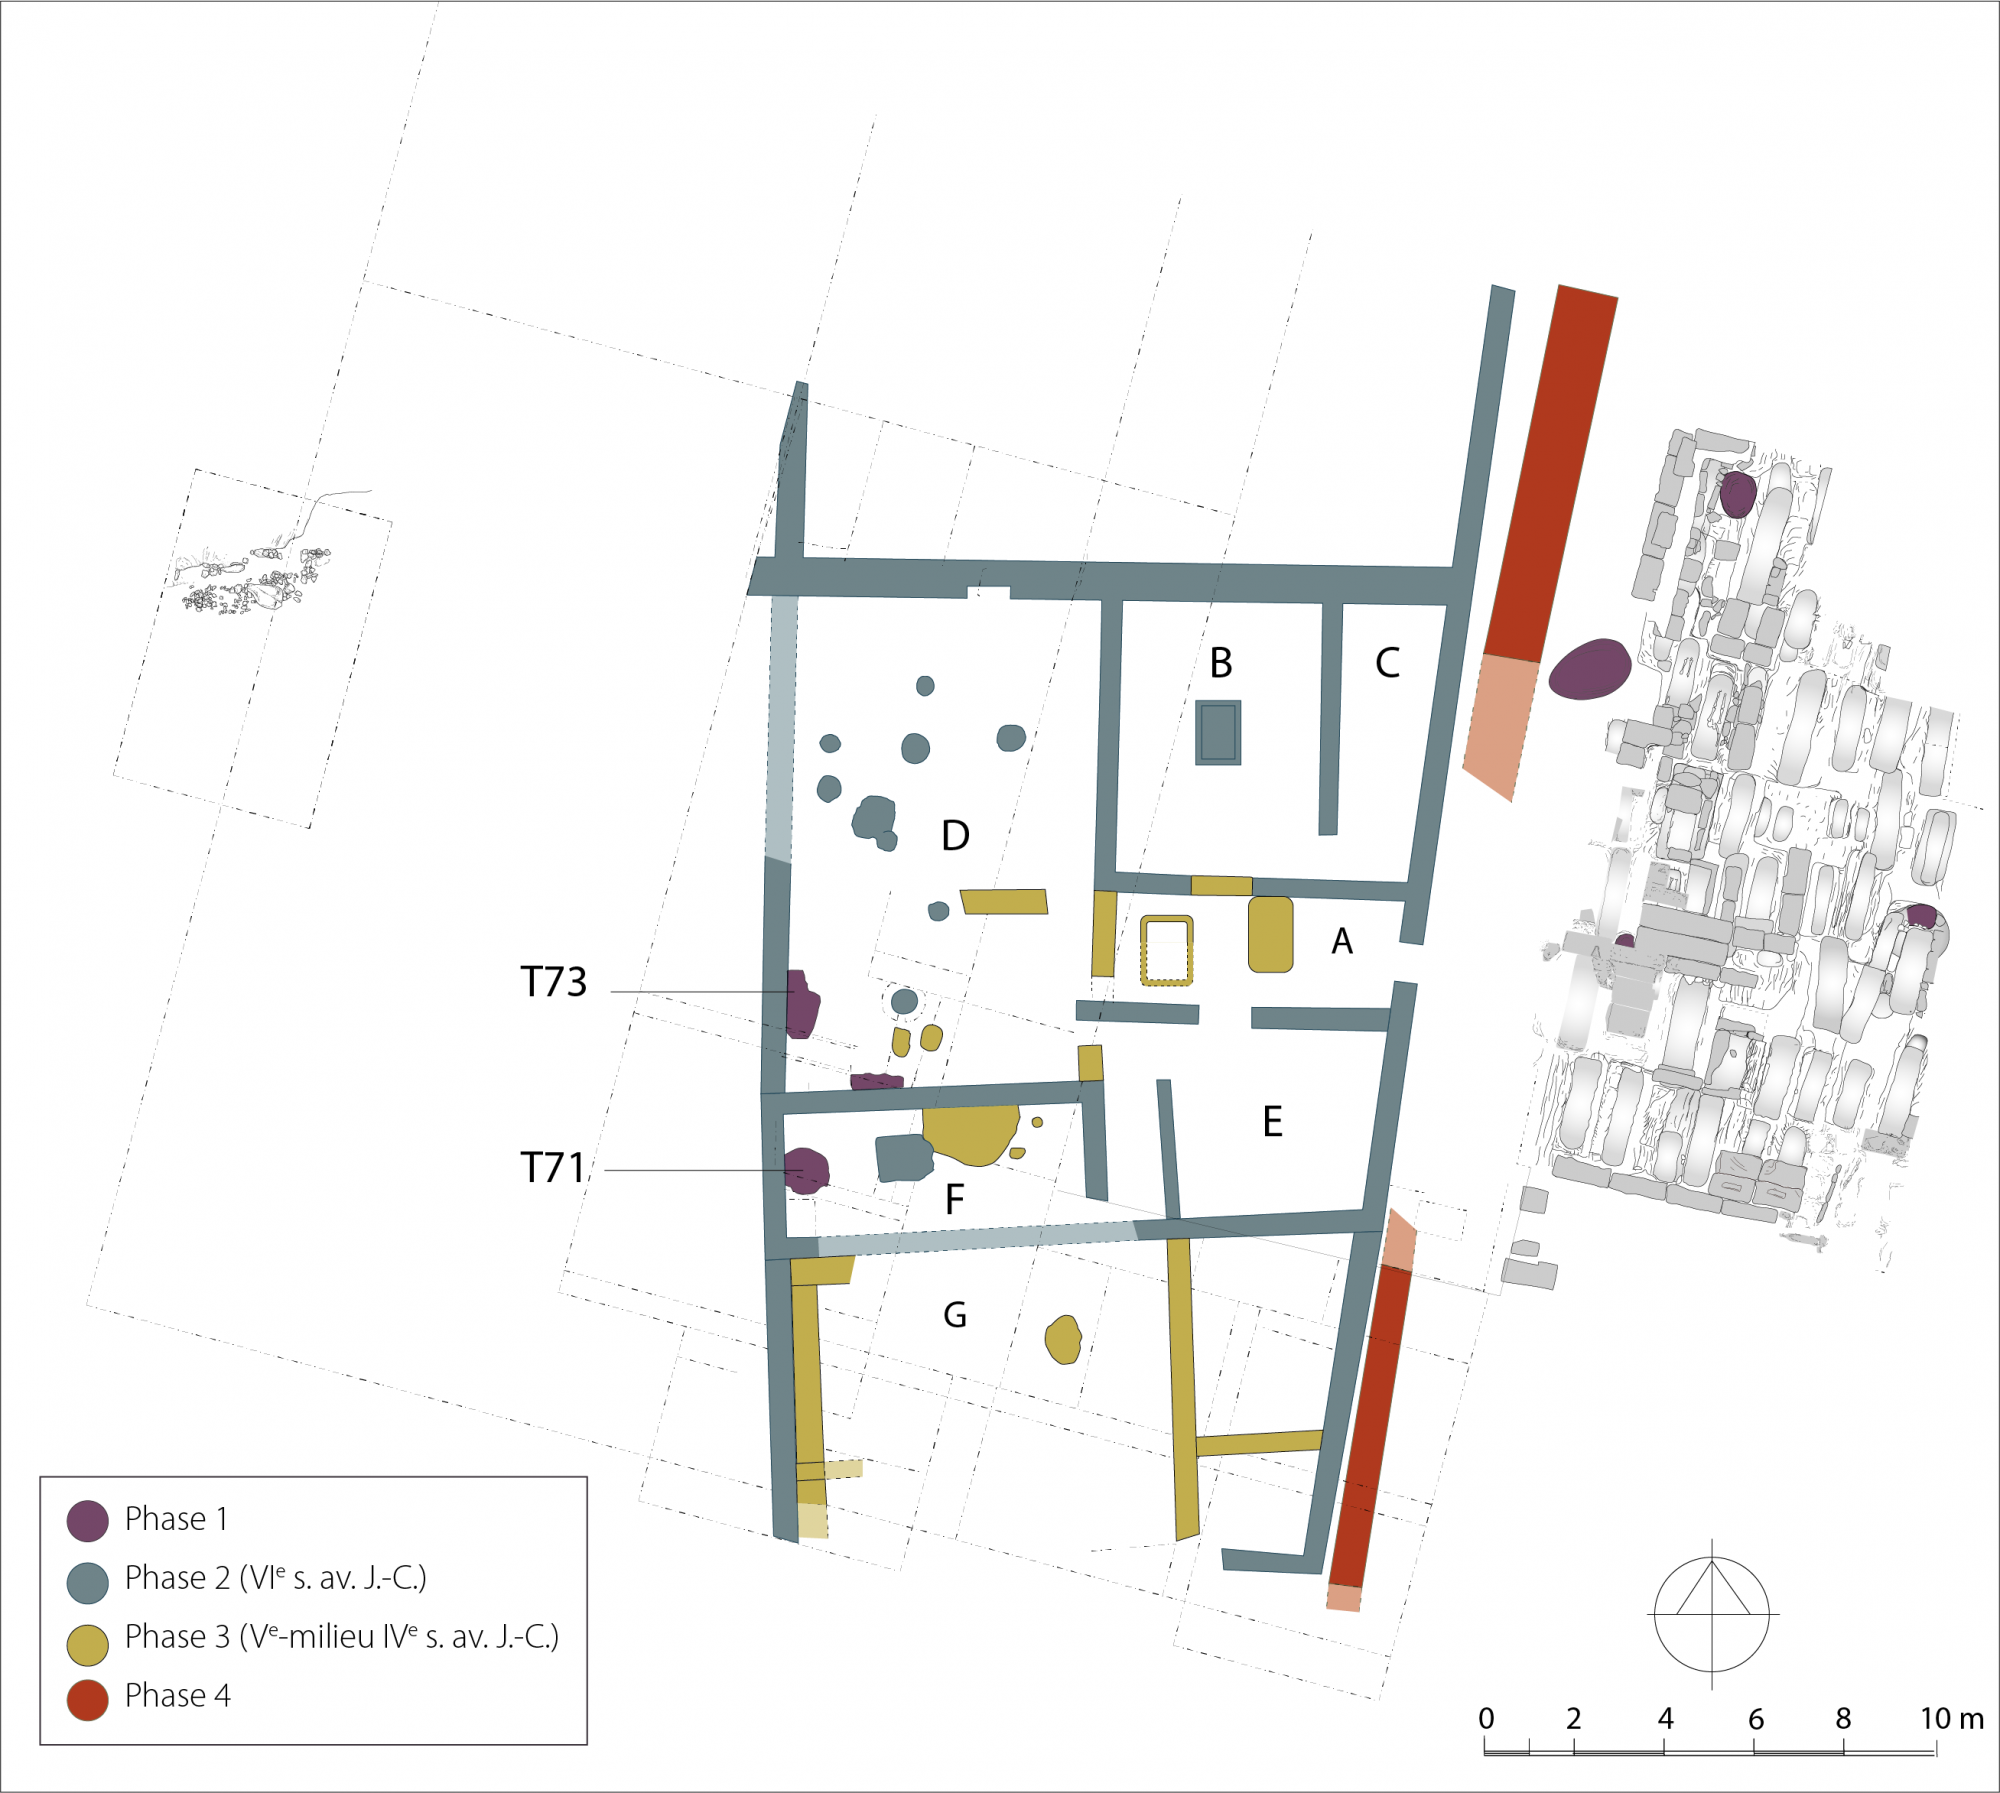 Plan du complexe archaïque avec les phases successives d’occupation (VIIe – milieu IVe s. avant J.C.)